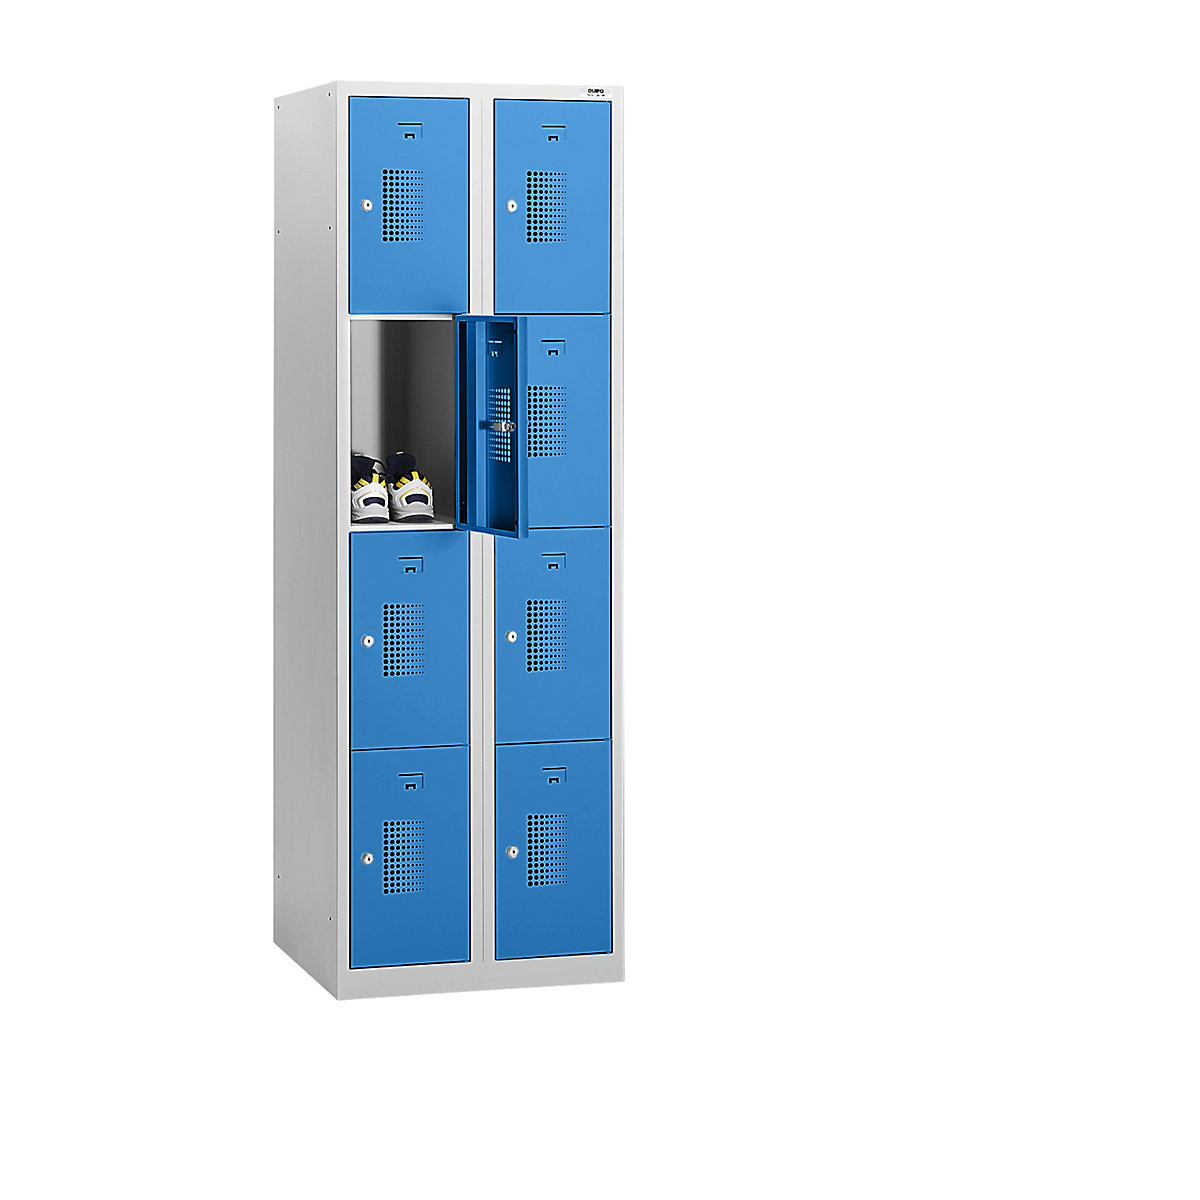 AMSTERDAM zárható rekeszes szekrény – eurokraft basic, 2 fülke, szélesség 600 mm, 8 rekesz, hengerzár, világosszürke váz, világoskék ajtók-22